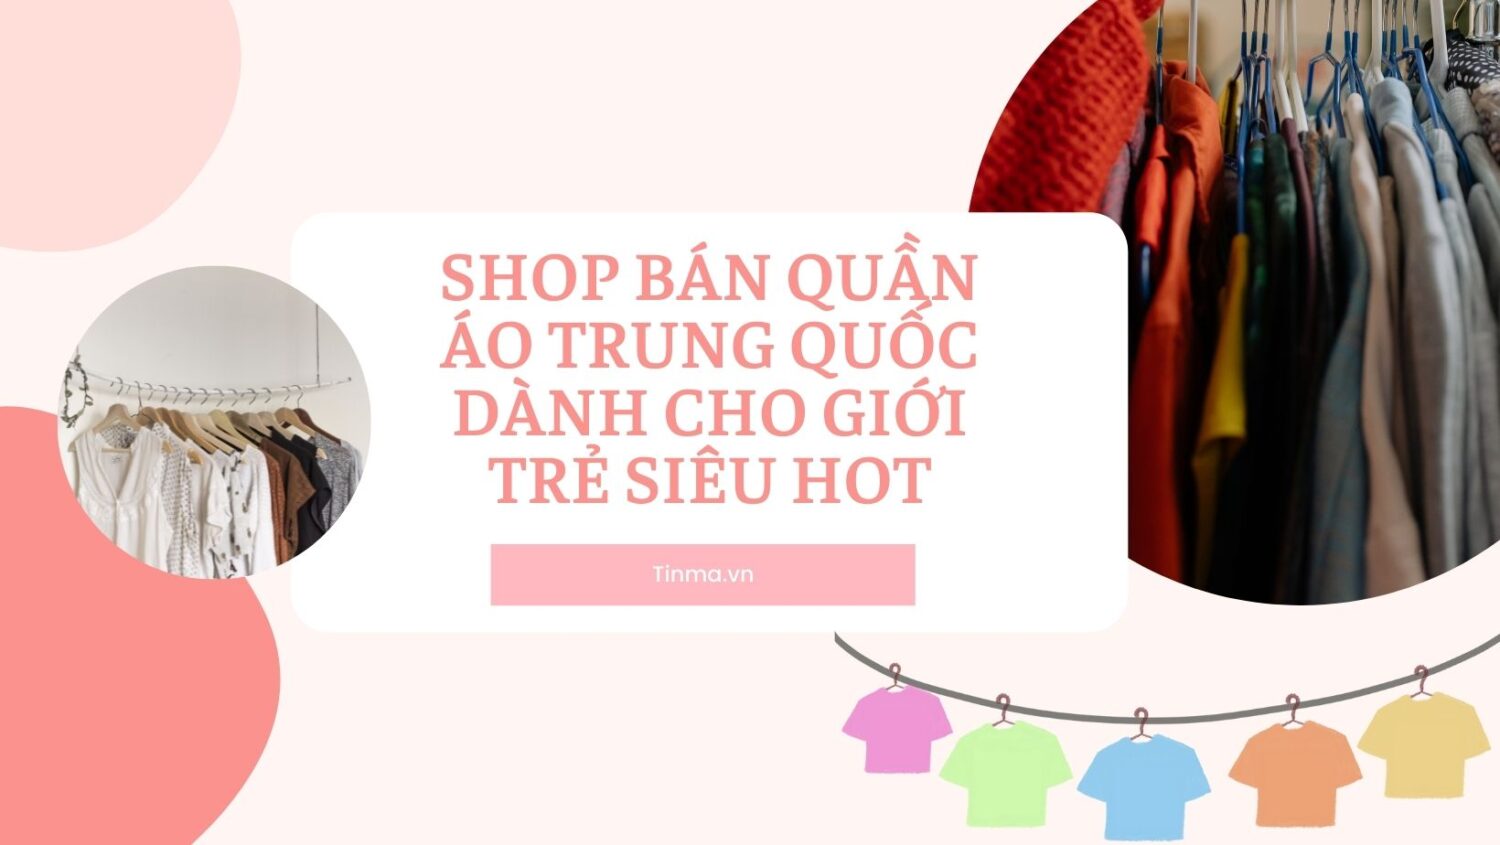 35+ shop bán quần áo Trung Quốc dành cho giới trẻ siêu hot - Tín Mã